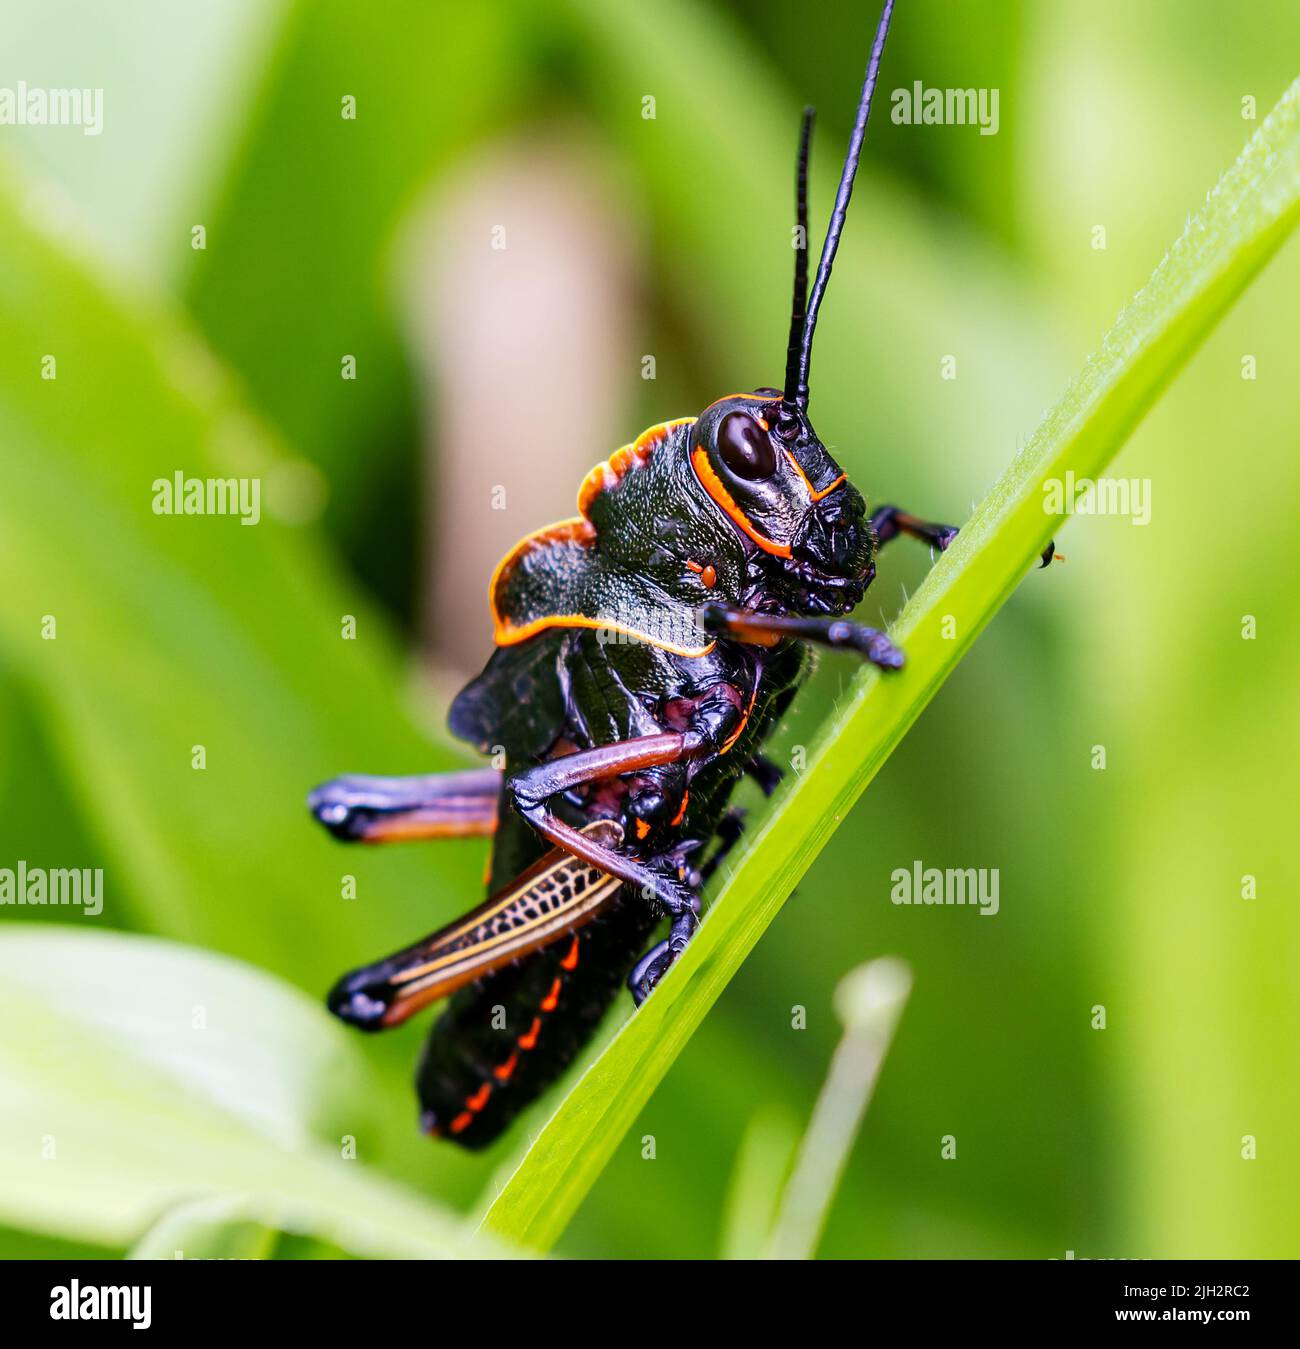 Lubber grasshopper on grass in costa rica Stock Photo